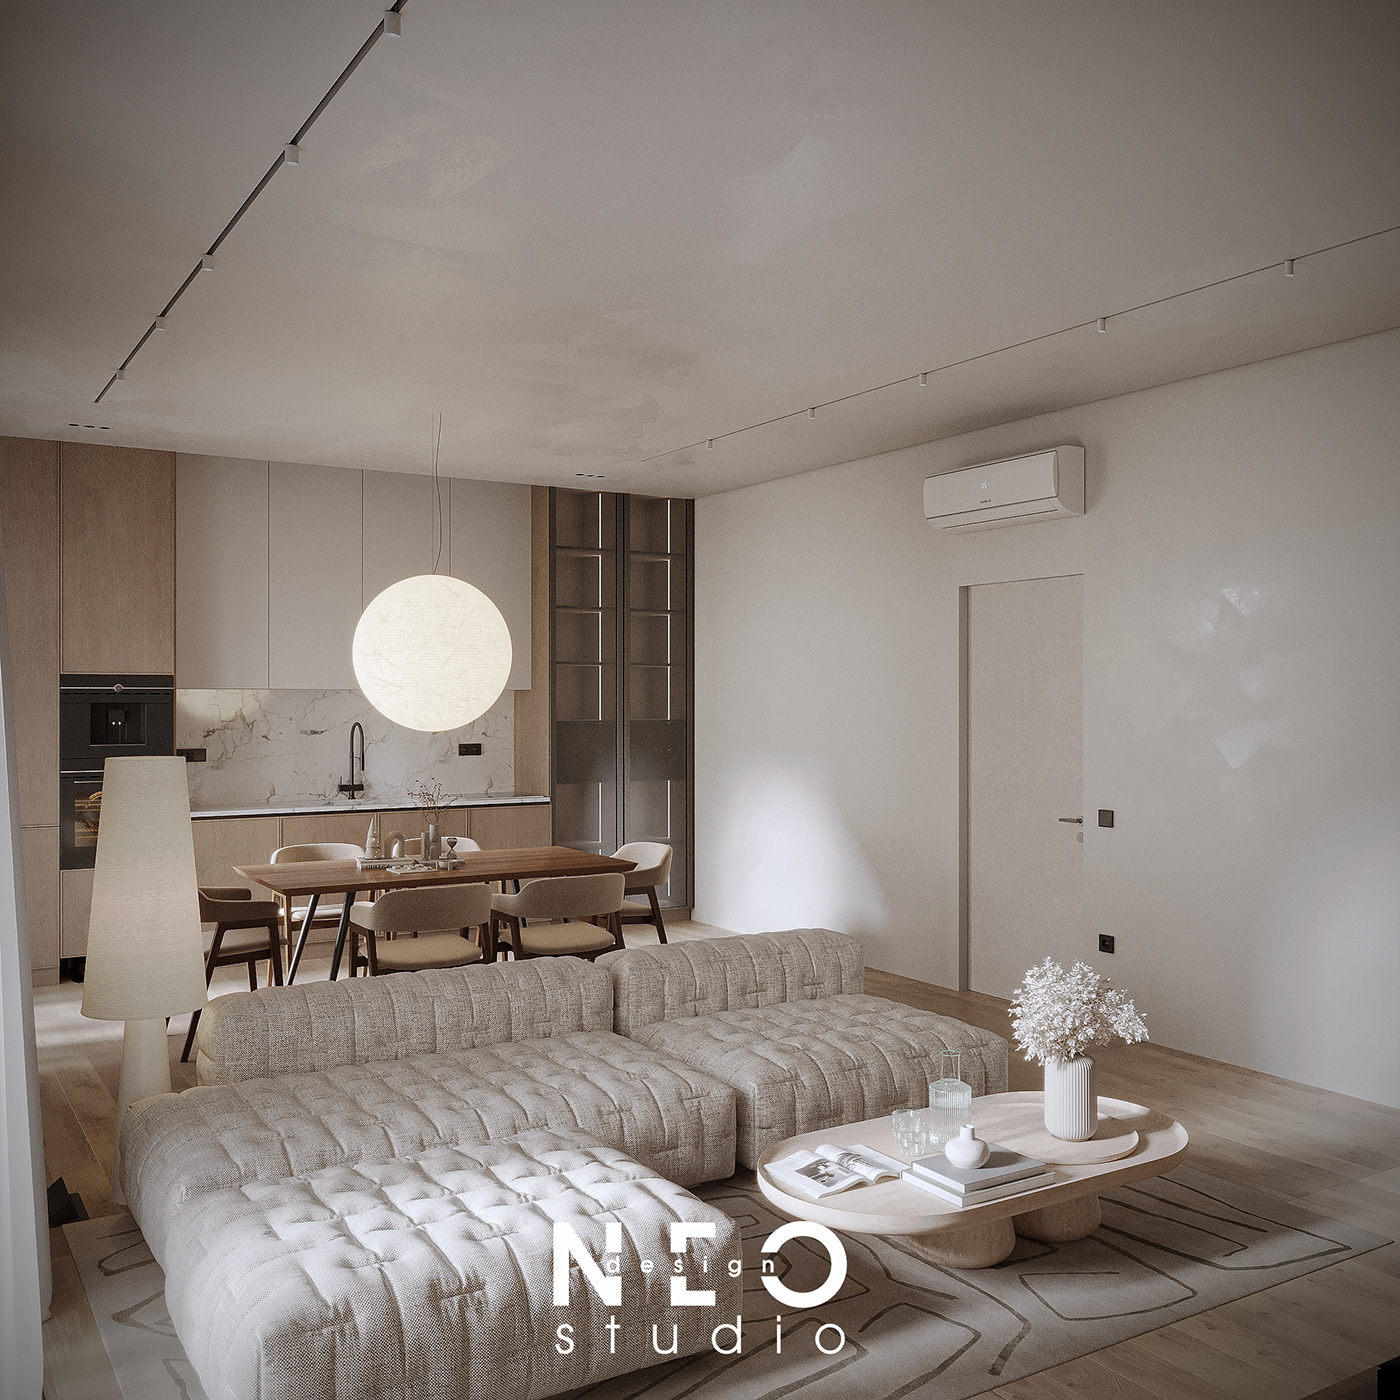 indoor architecture Render visualization interior design  3ds max modern corona archviz CGI